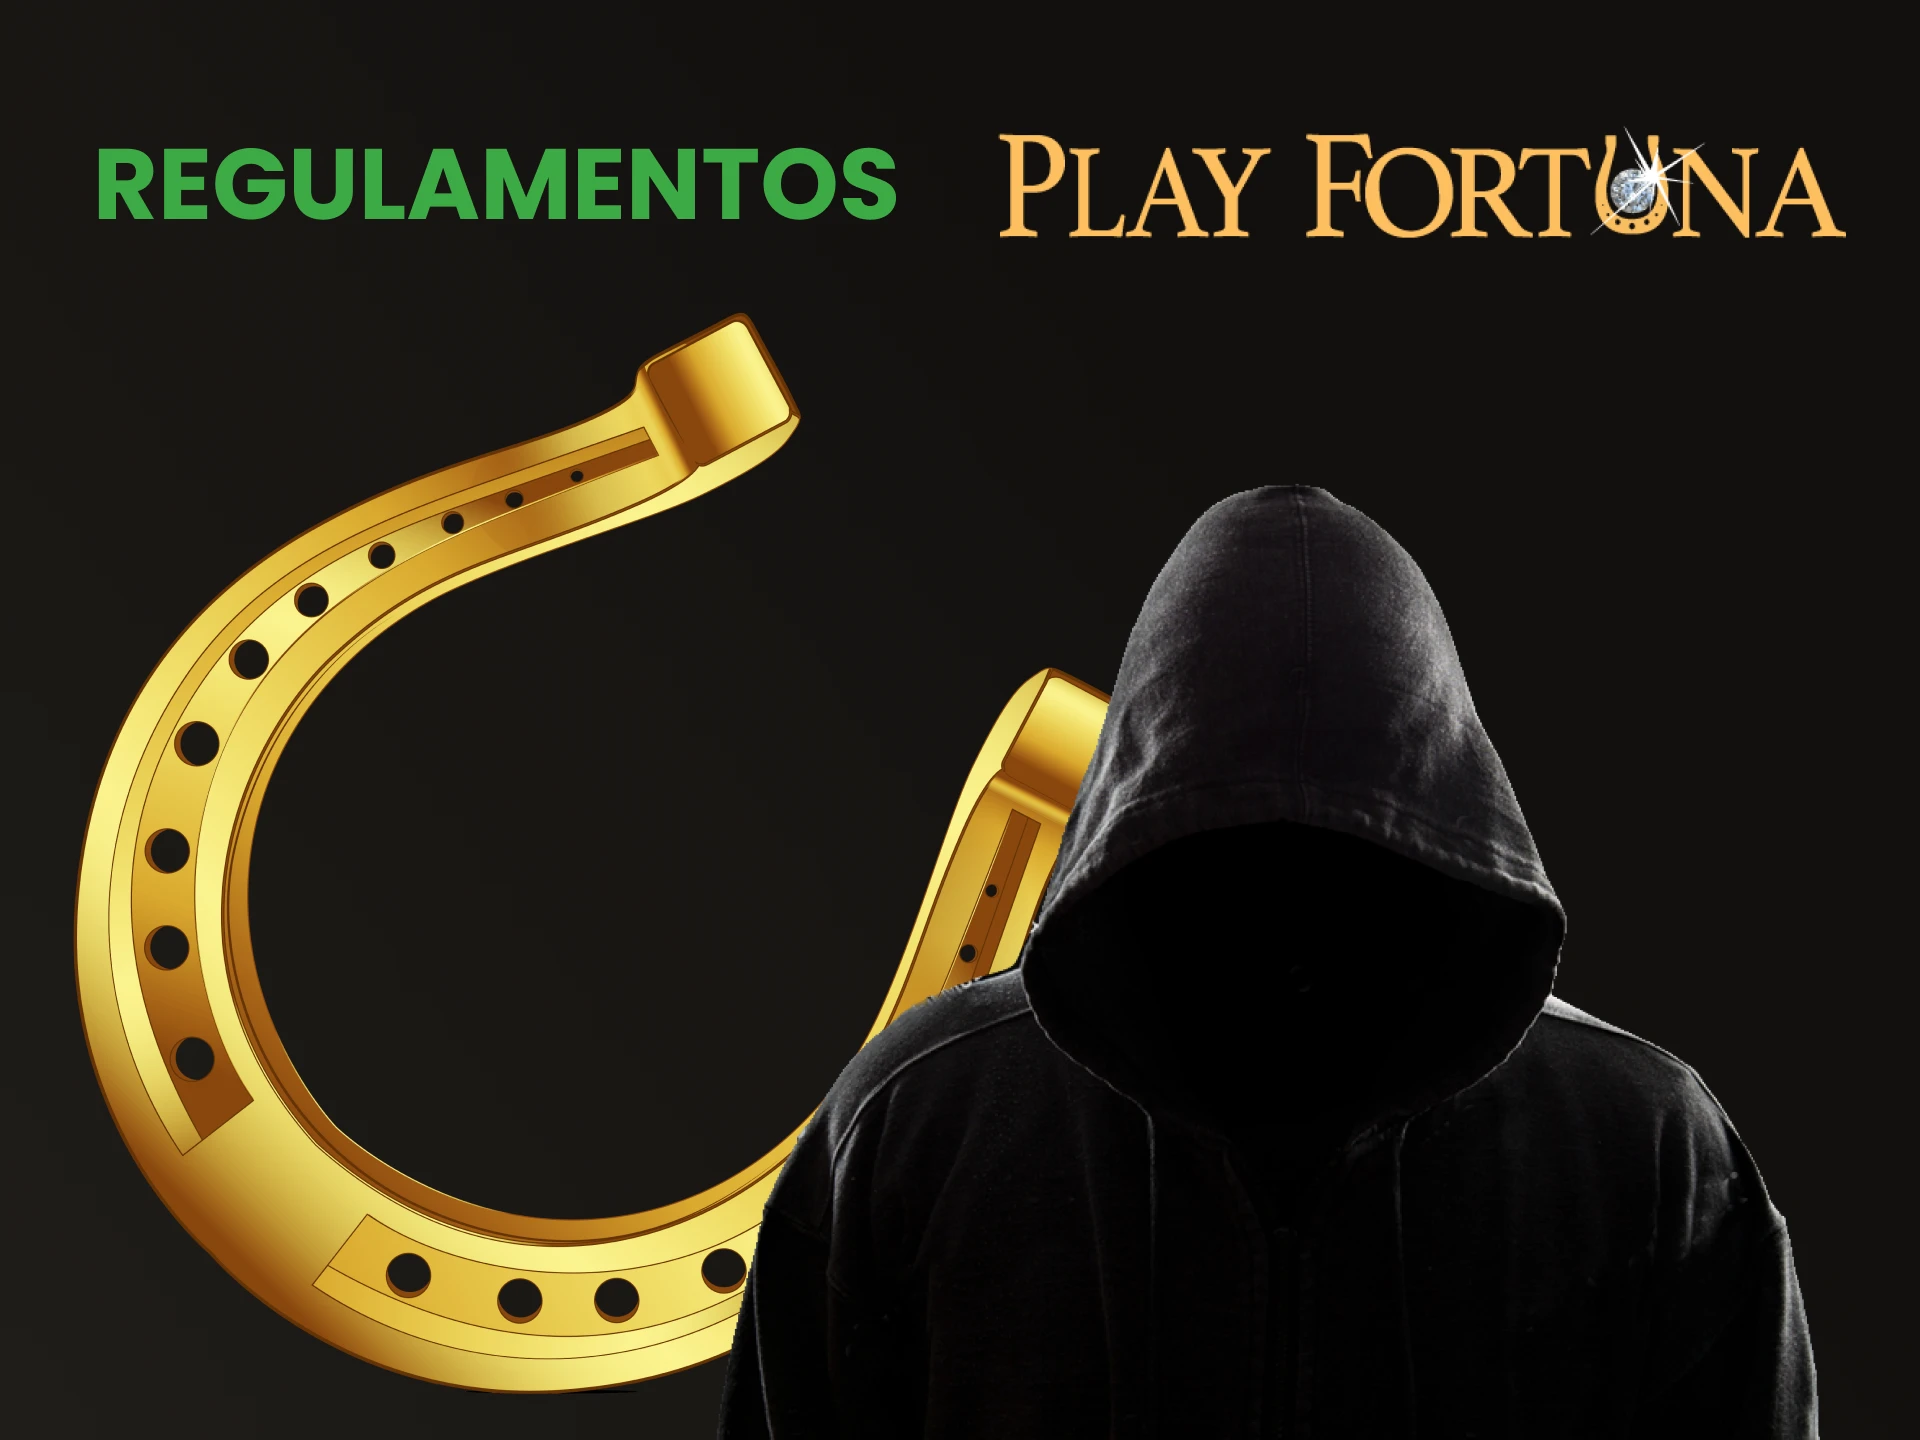 Forneceremos informações sobre como evitar ser vítima de golpistas no Play Fortuna.